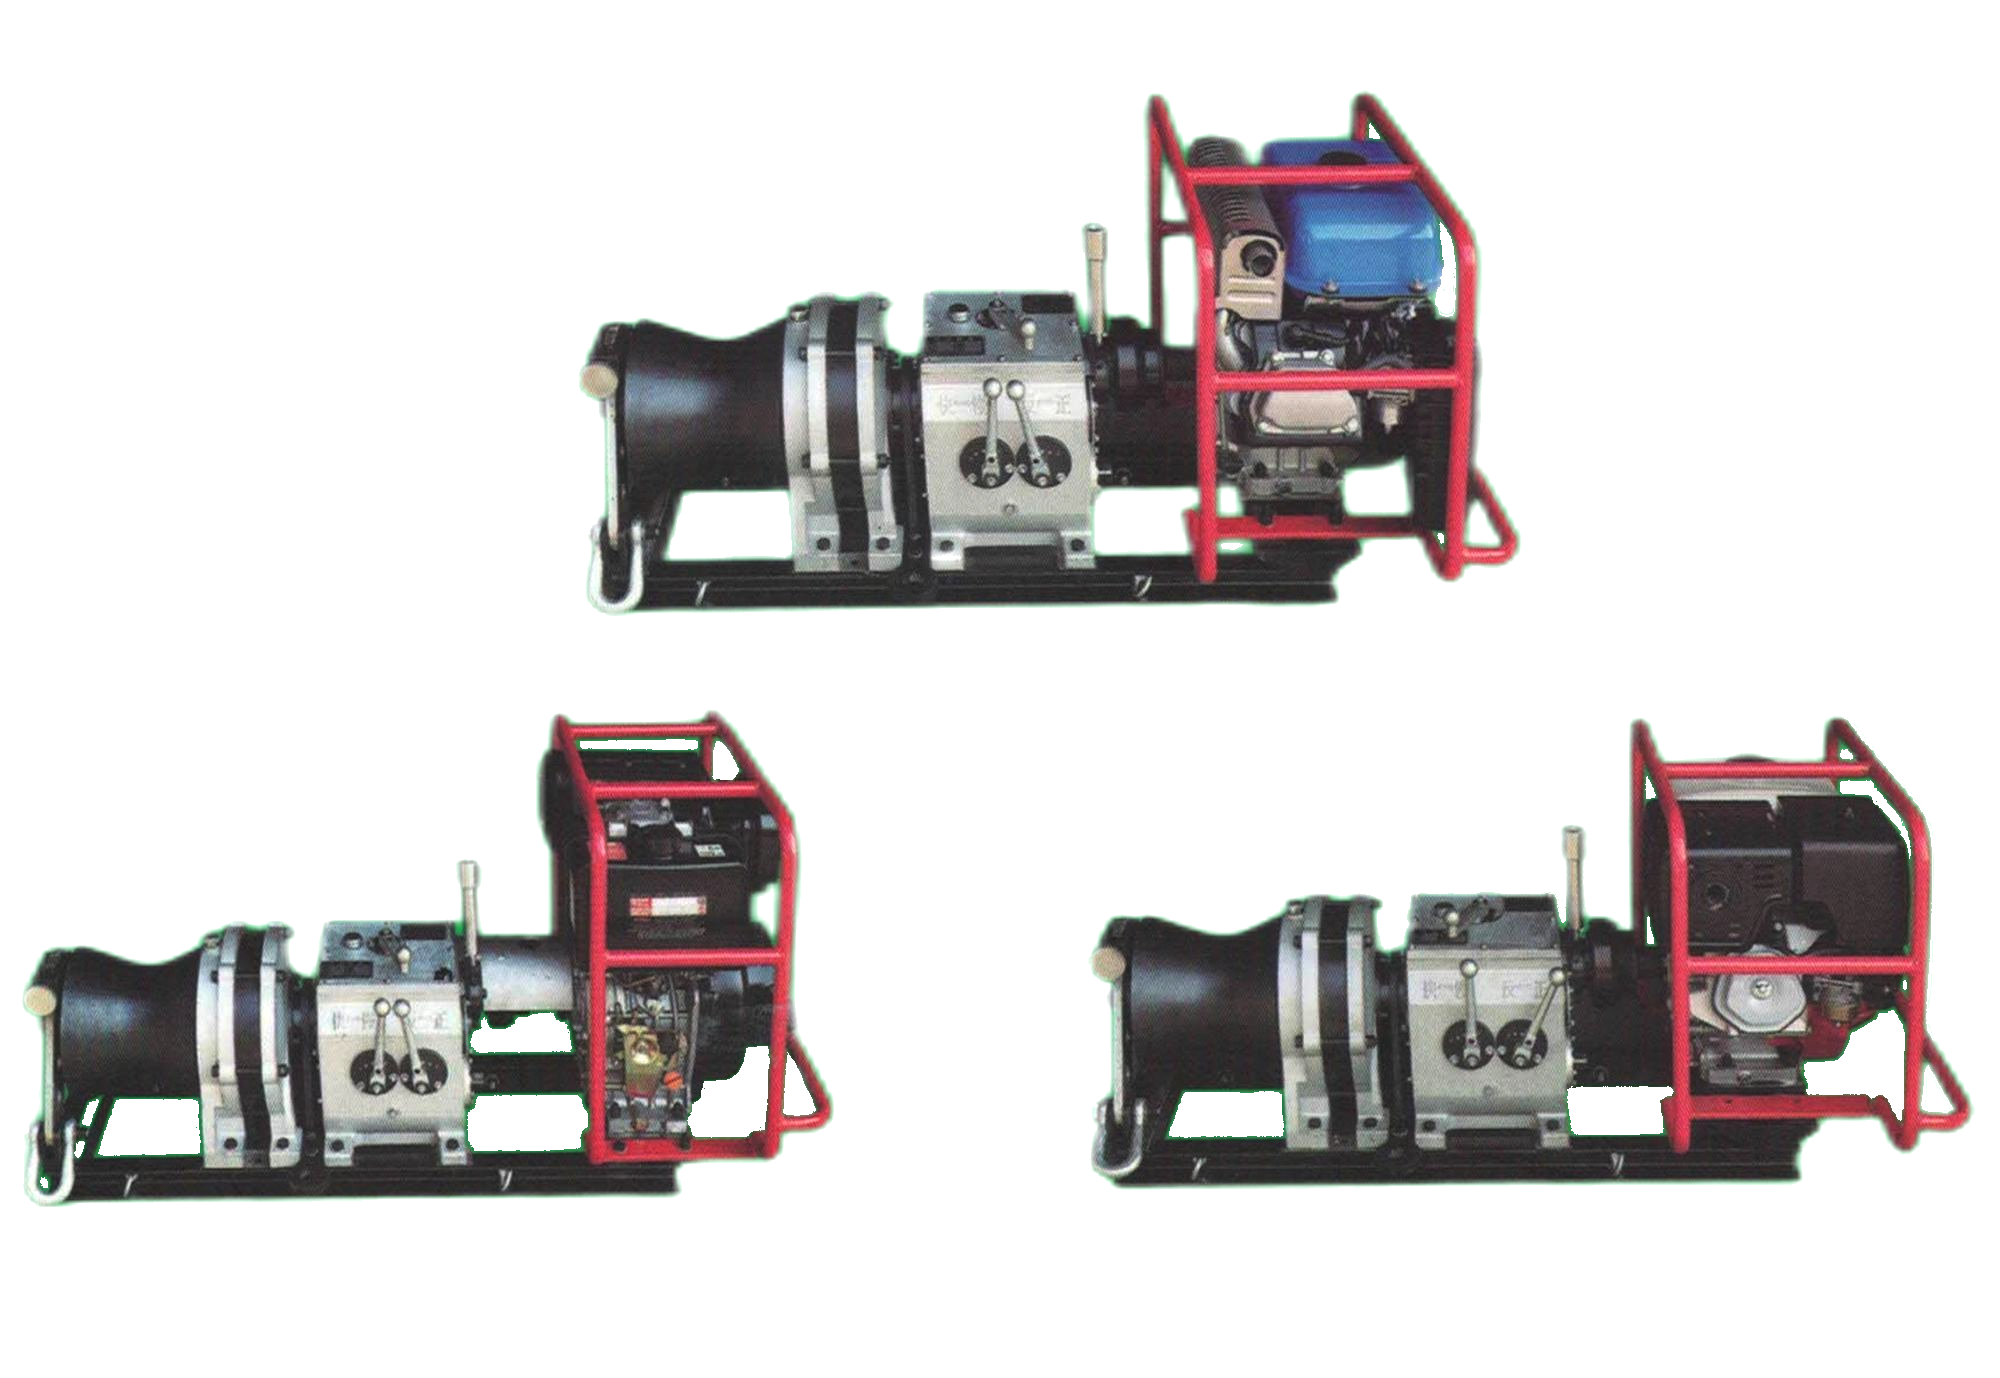 फास्ट पावर केबल पुलिङ क्याप्सन इलेक्ट्रिक डिजेल पेट्रोल द्वारा संचालित विन्च चित्रित छवि